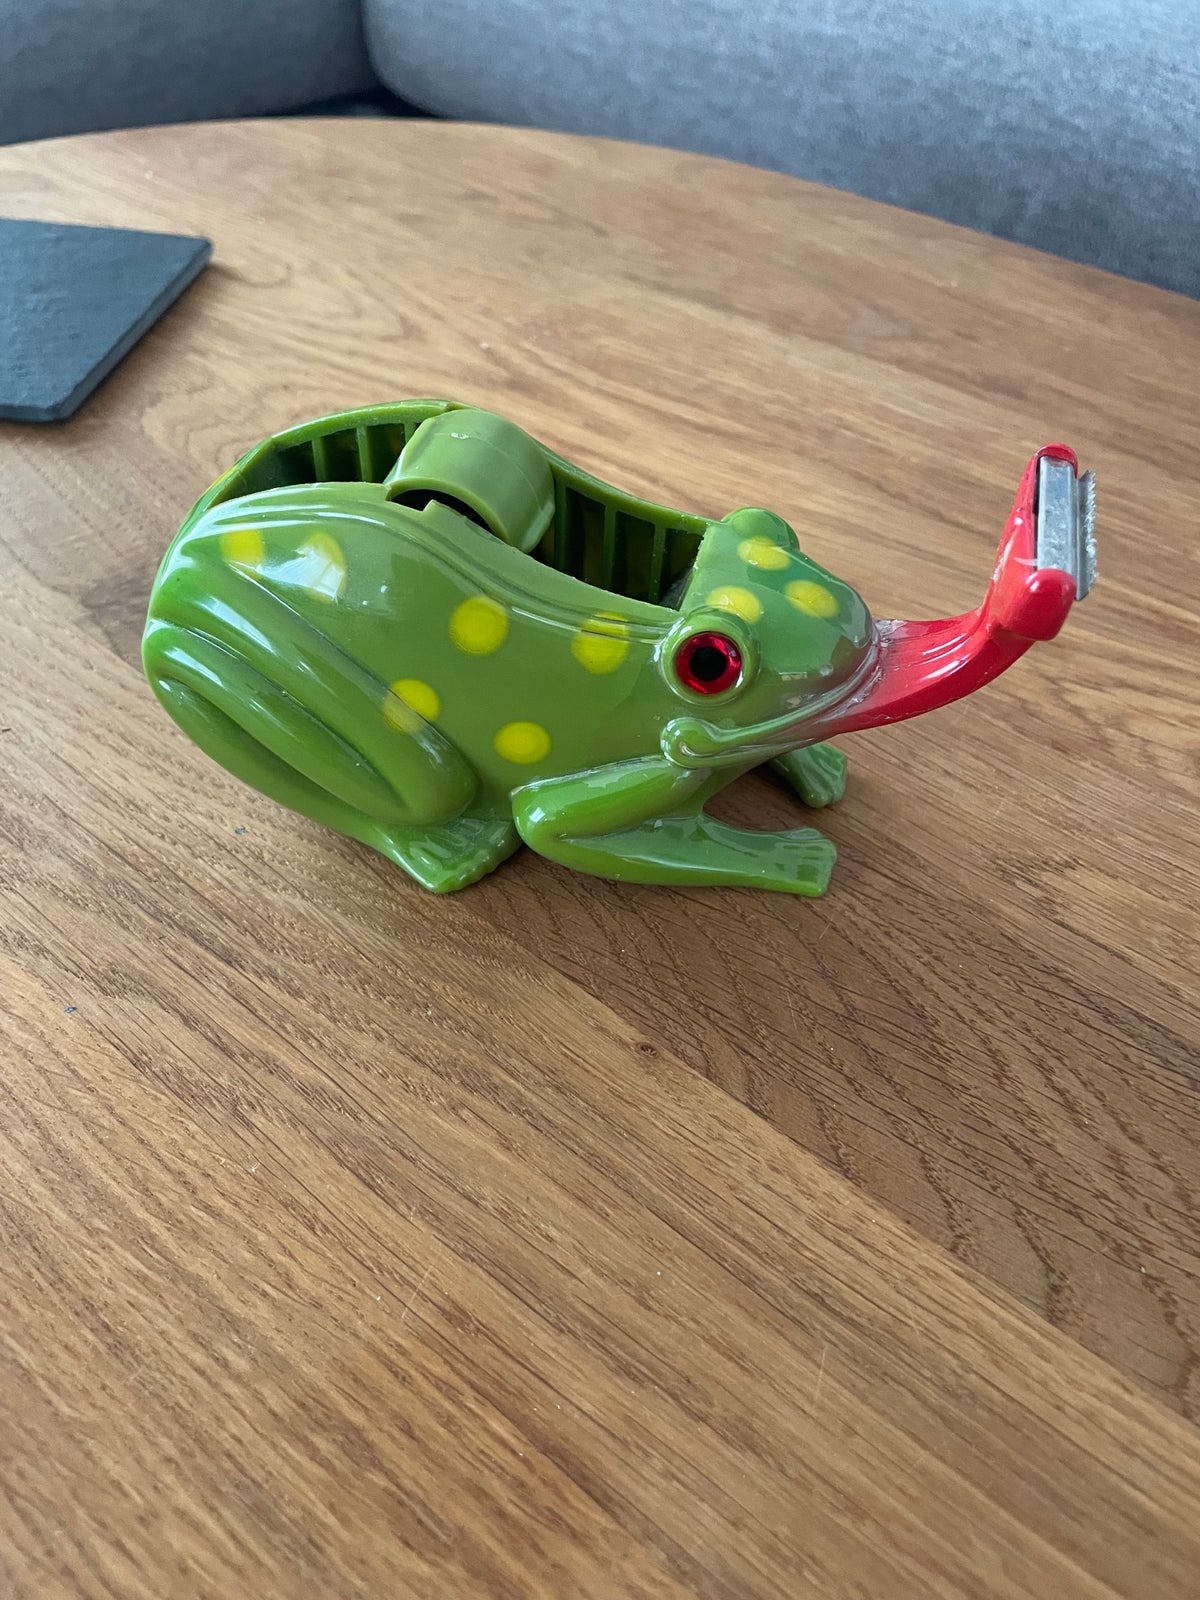 Frog Tape Dispenser